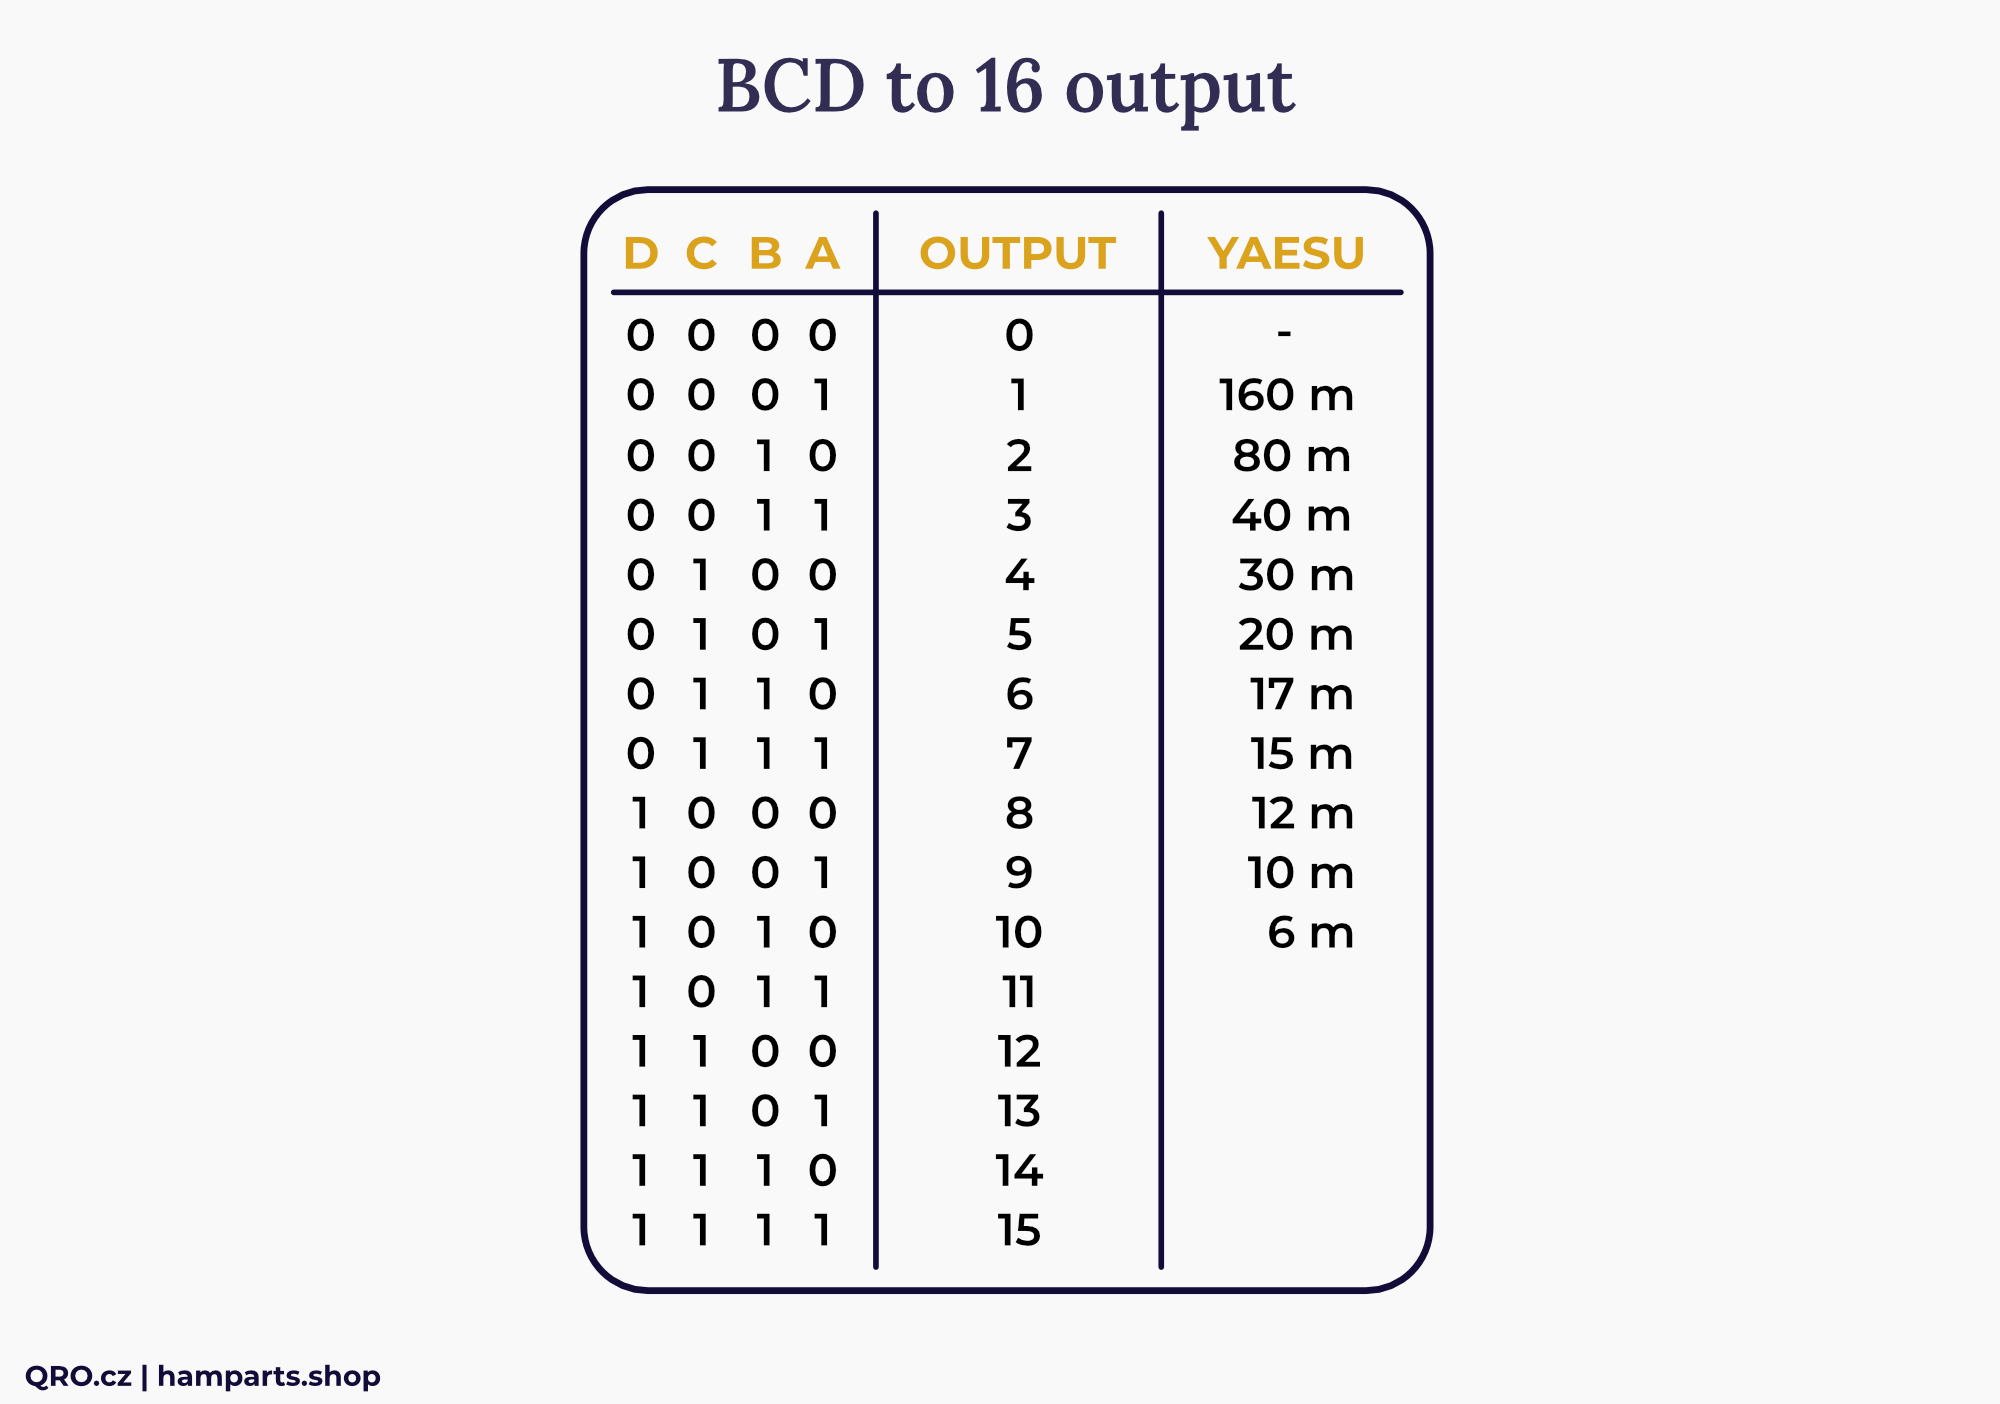 bcd to dec converter matrix table qro.cz hamparts.shop